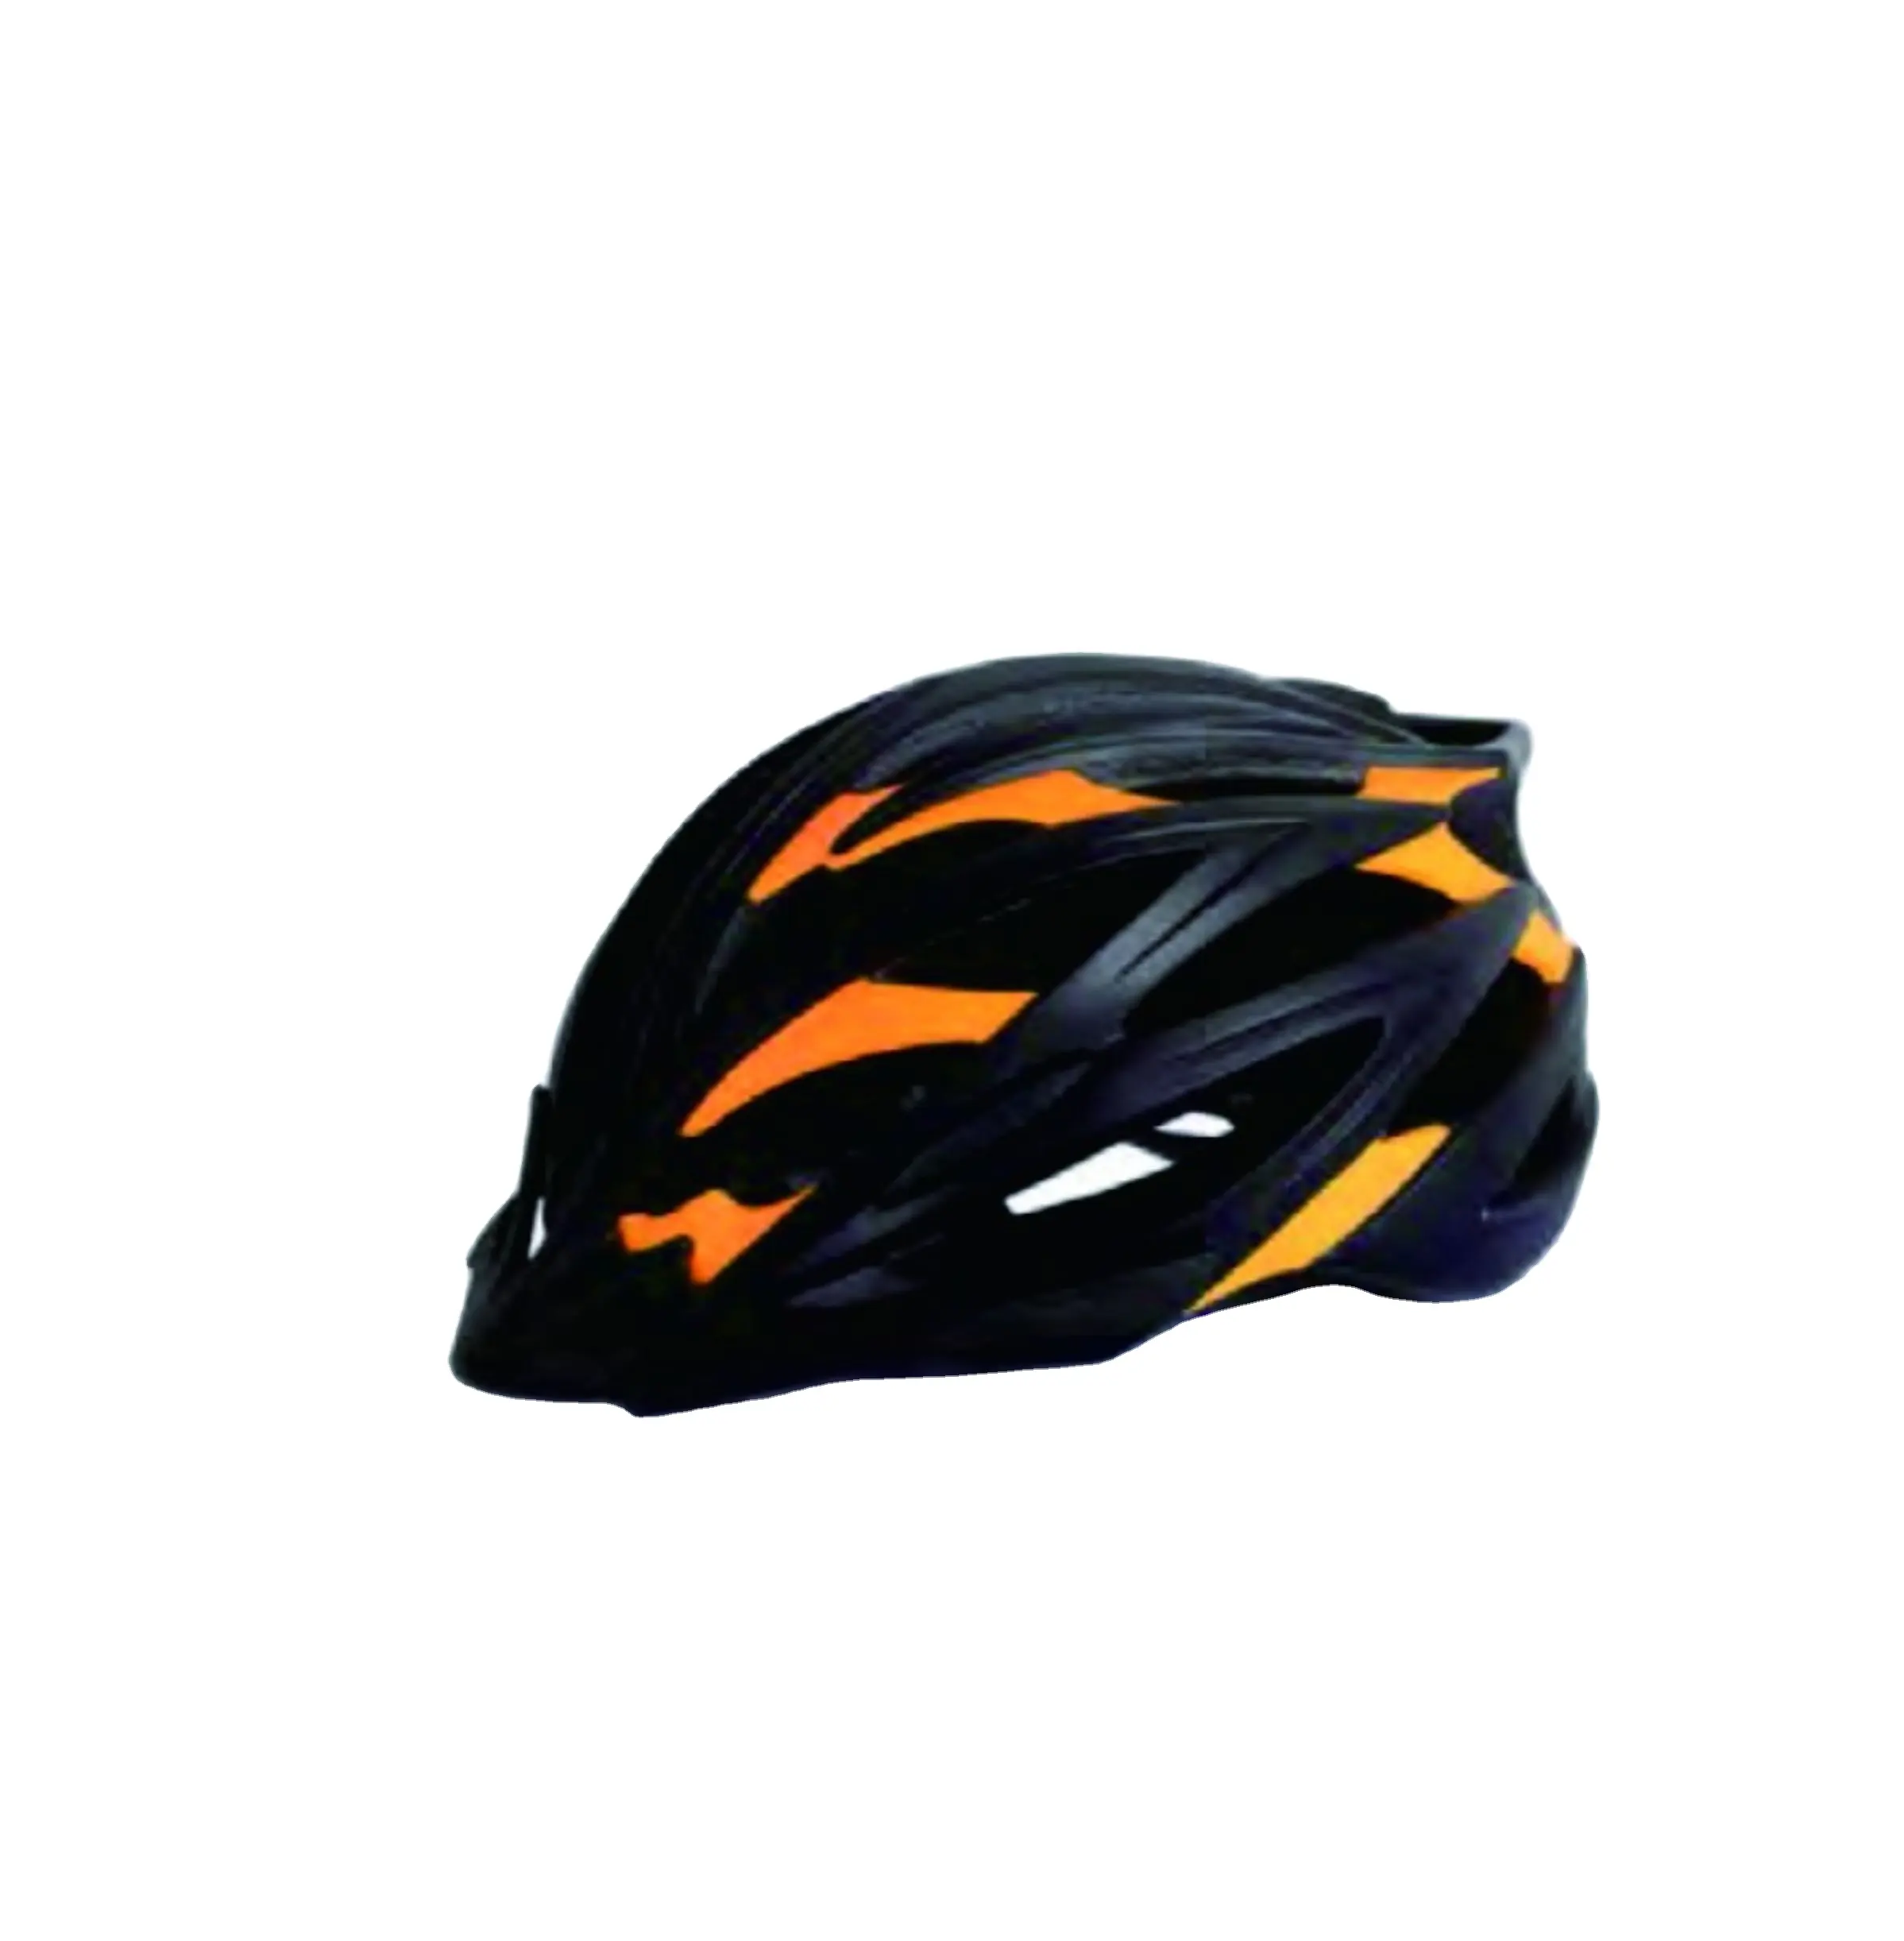 Новейший китайский цветной пластиковый велосипедный шлем для спорта с двойным корпусом S/M/L